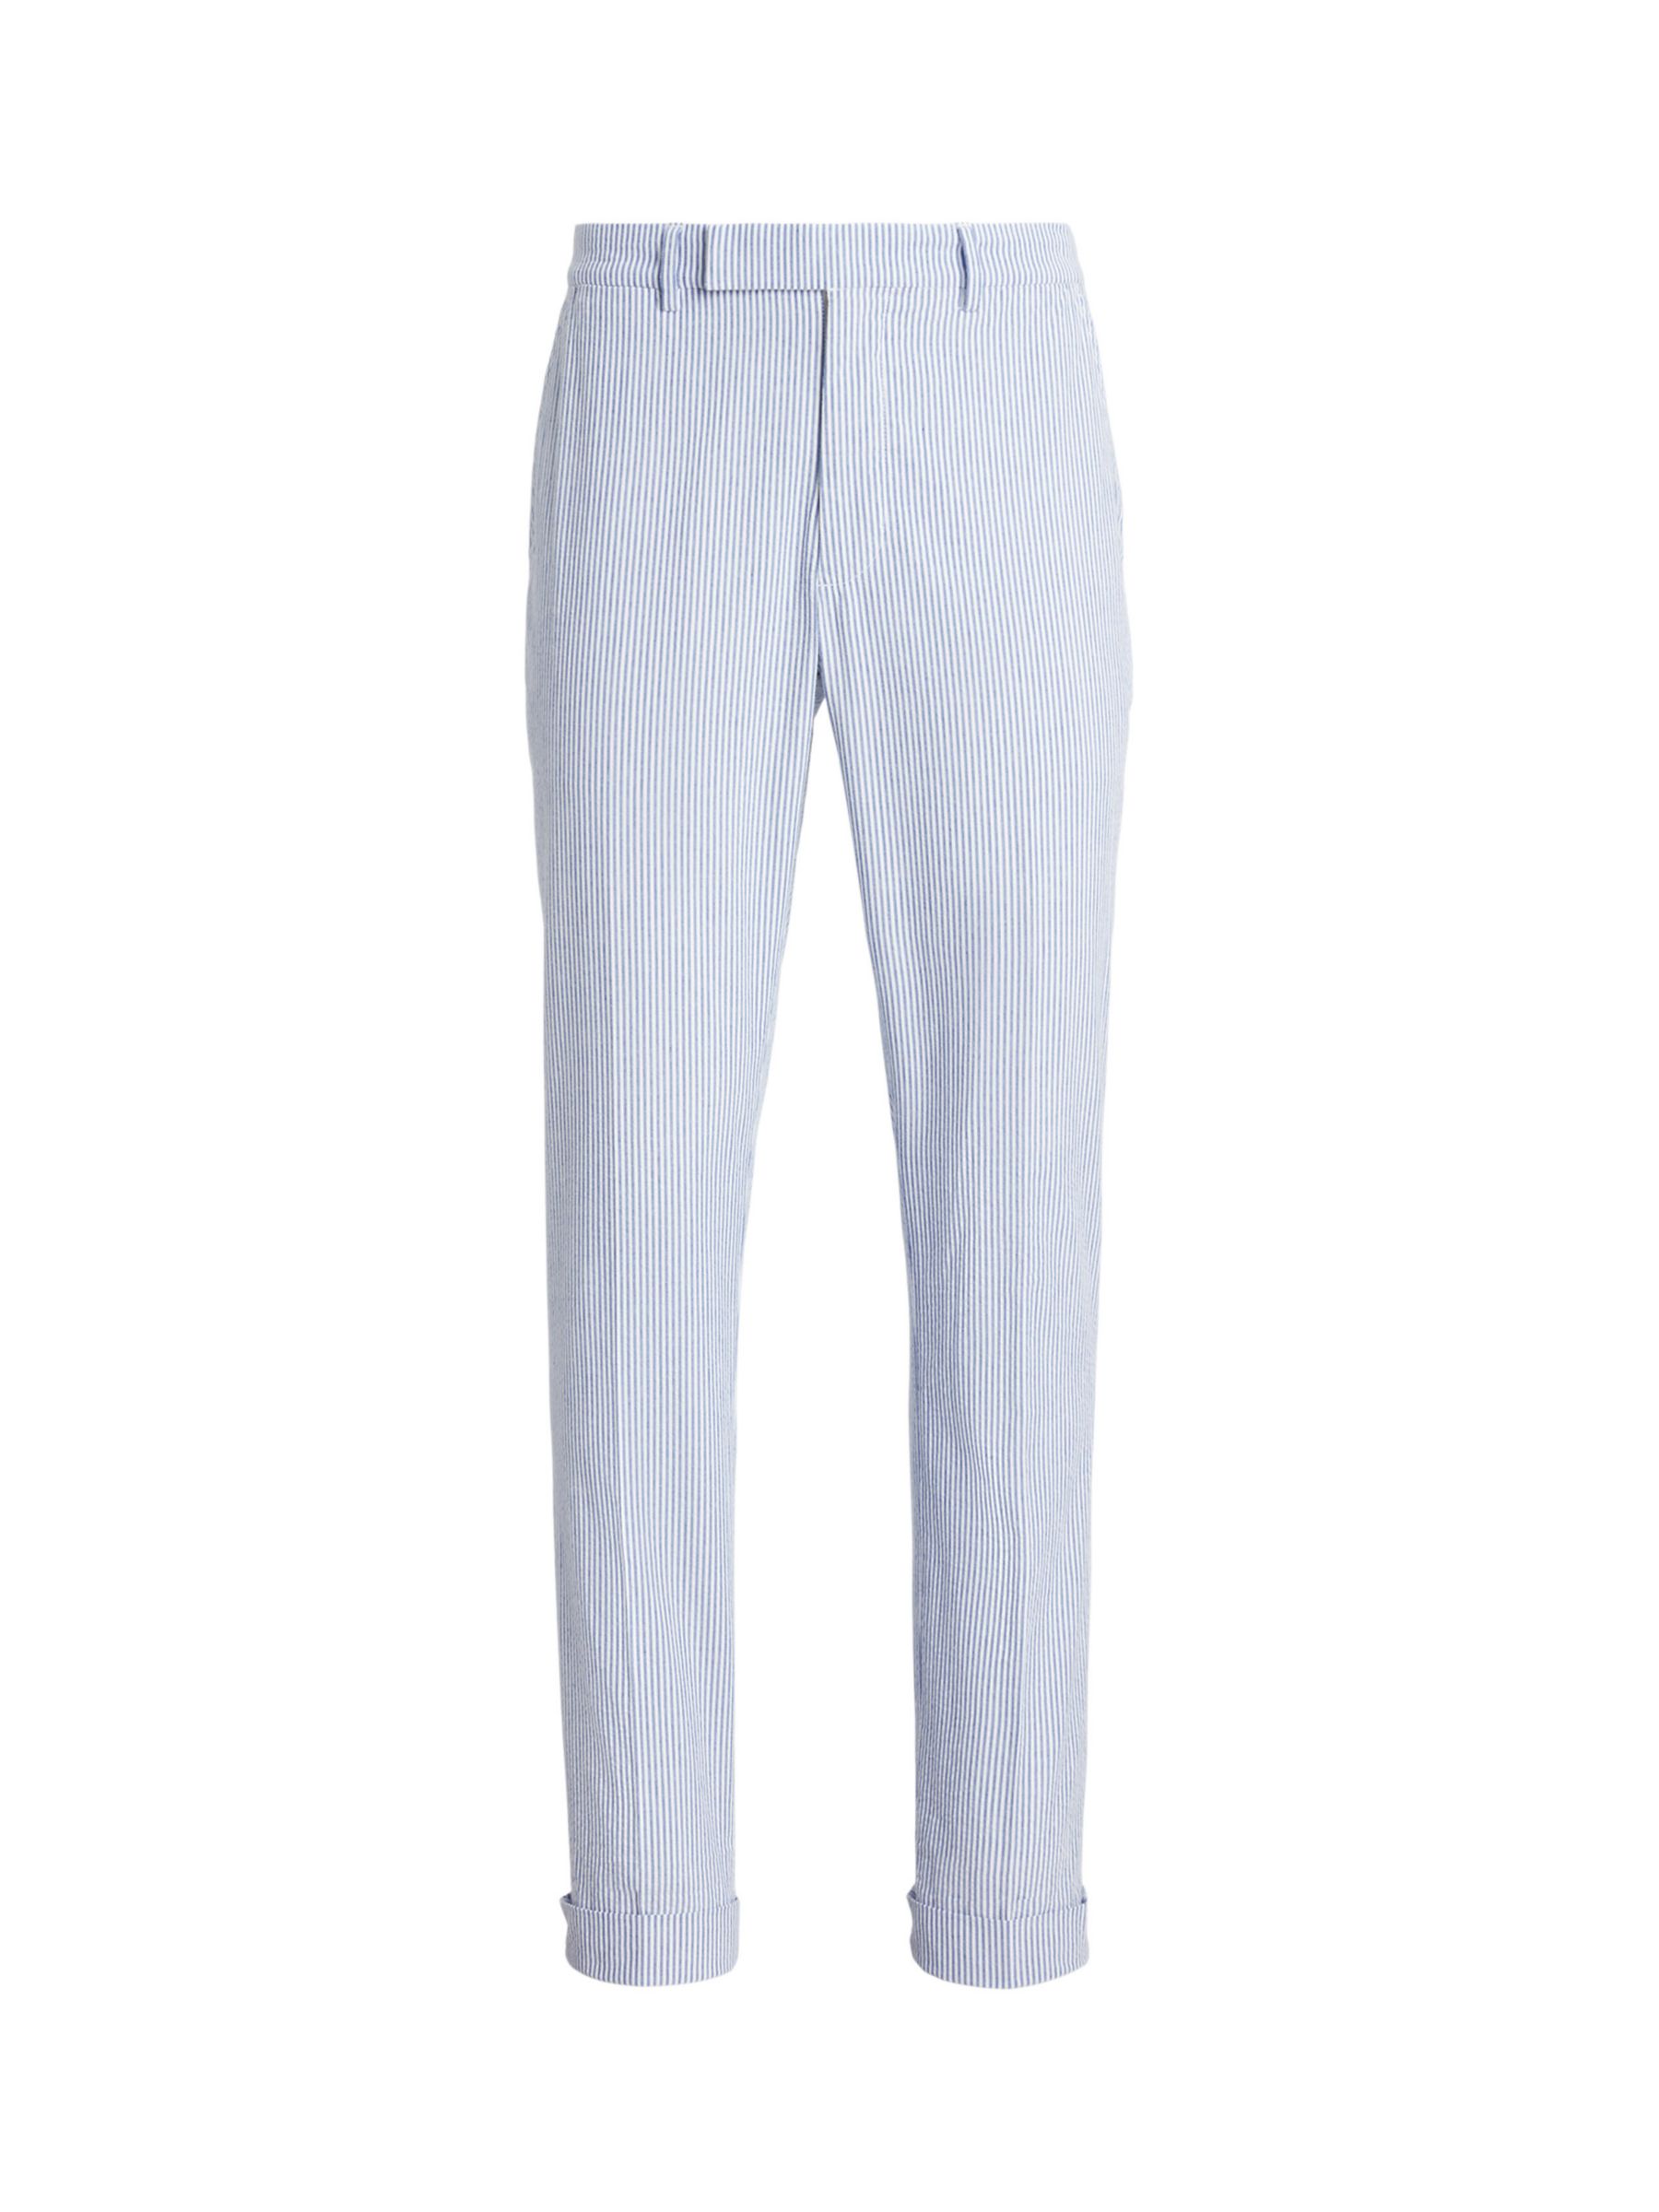 Ralph Lauren Seersucker Suit Trousers, Blue/White, 32R